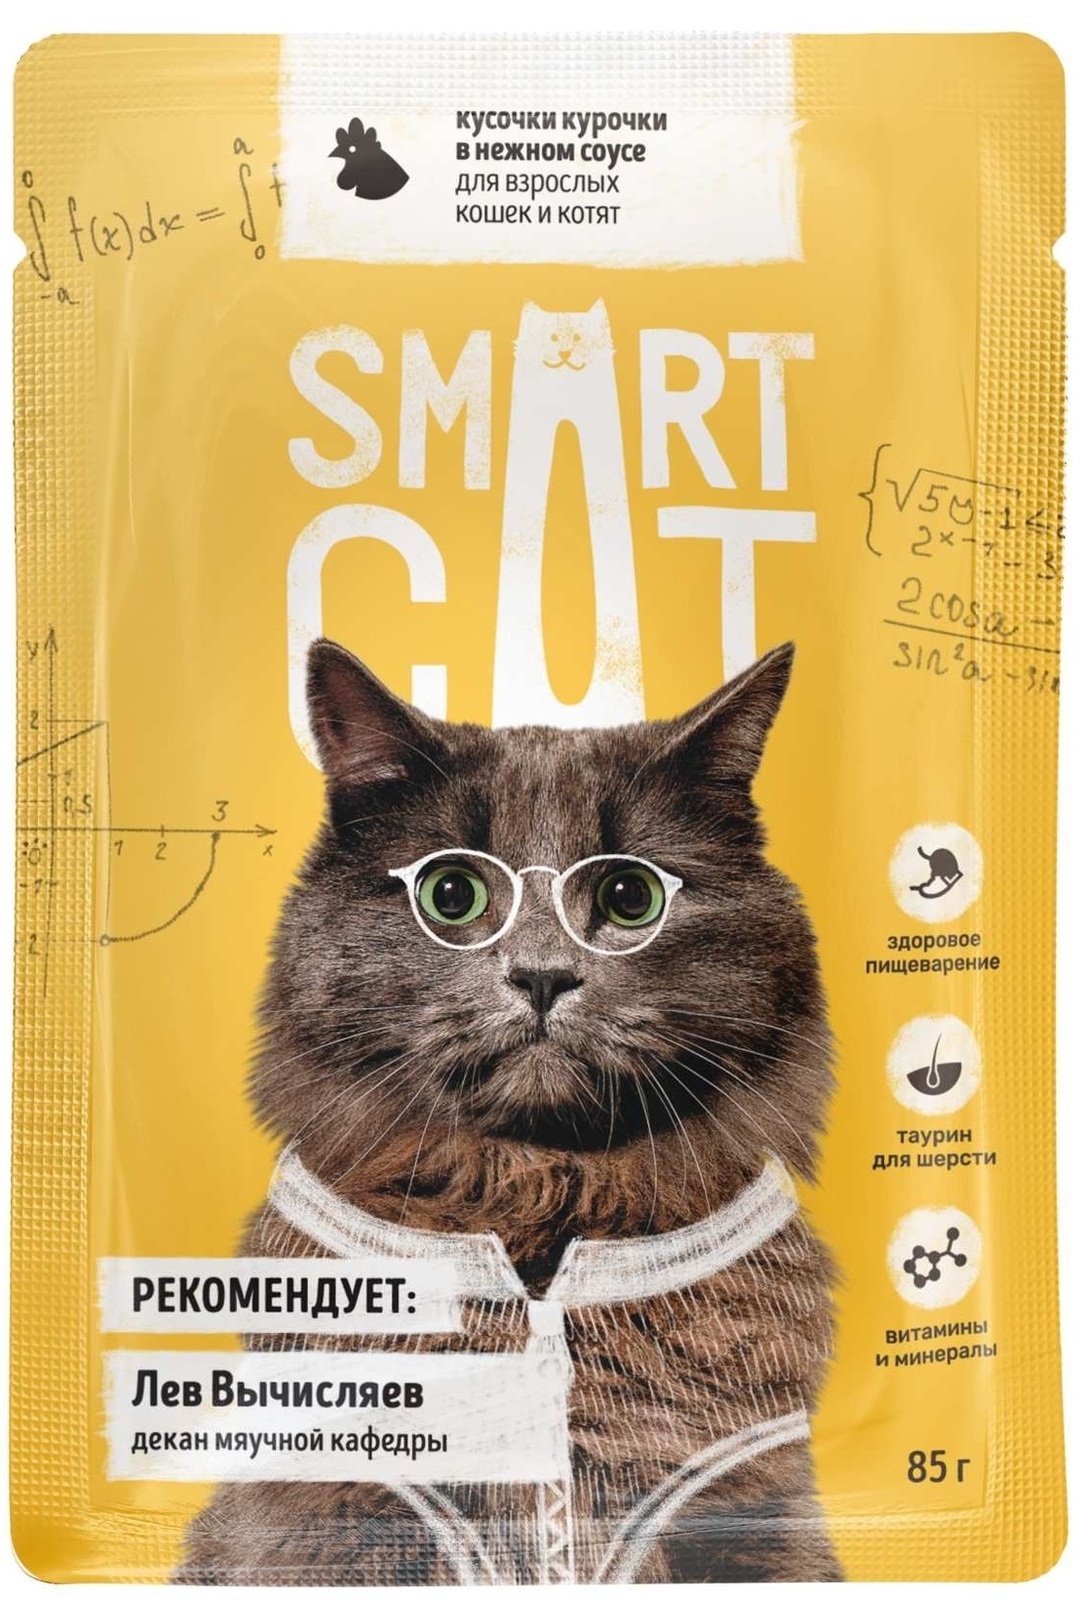 Smart Cat Smart Cat паучи для взрослых кошек и котят: кусочки курочки в нежном соусе (85 г)